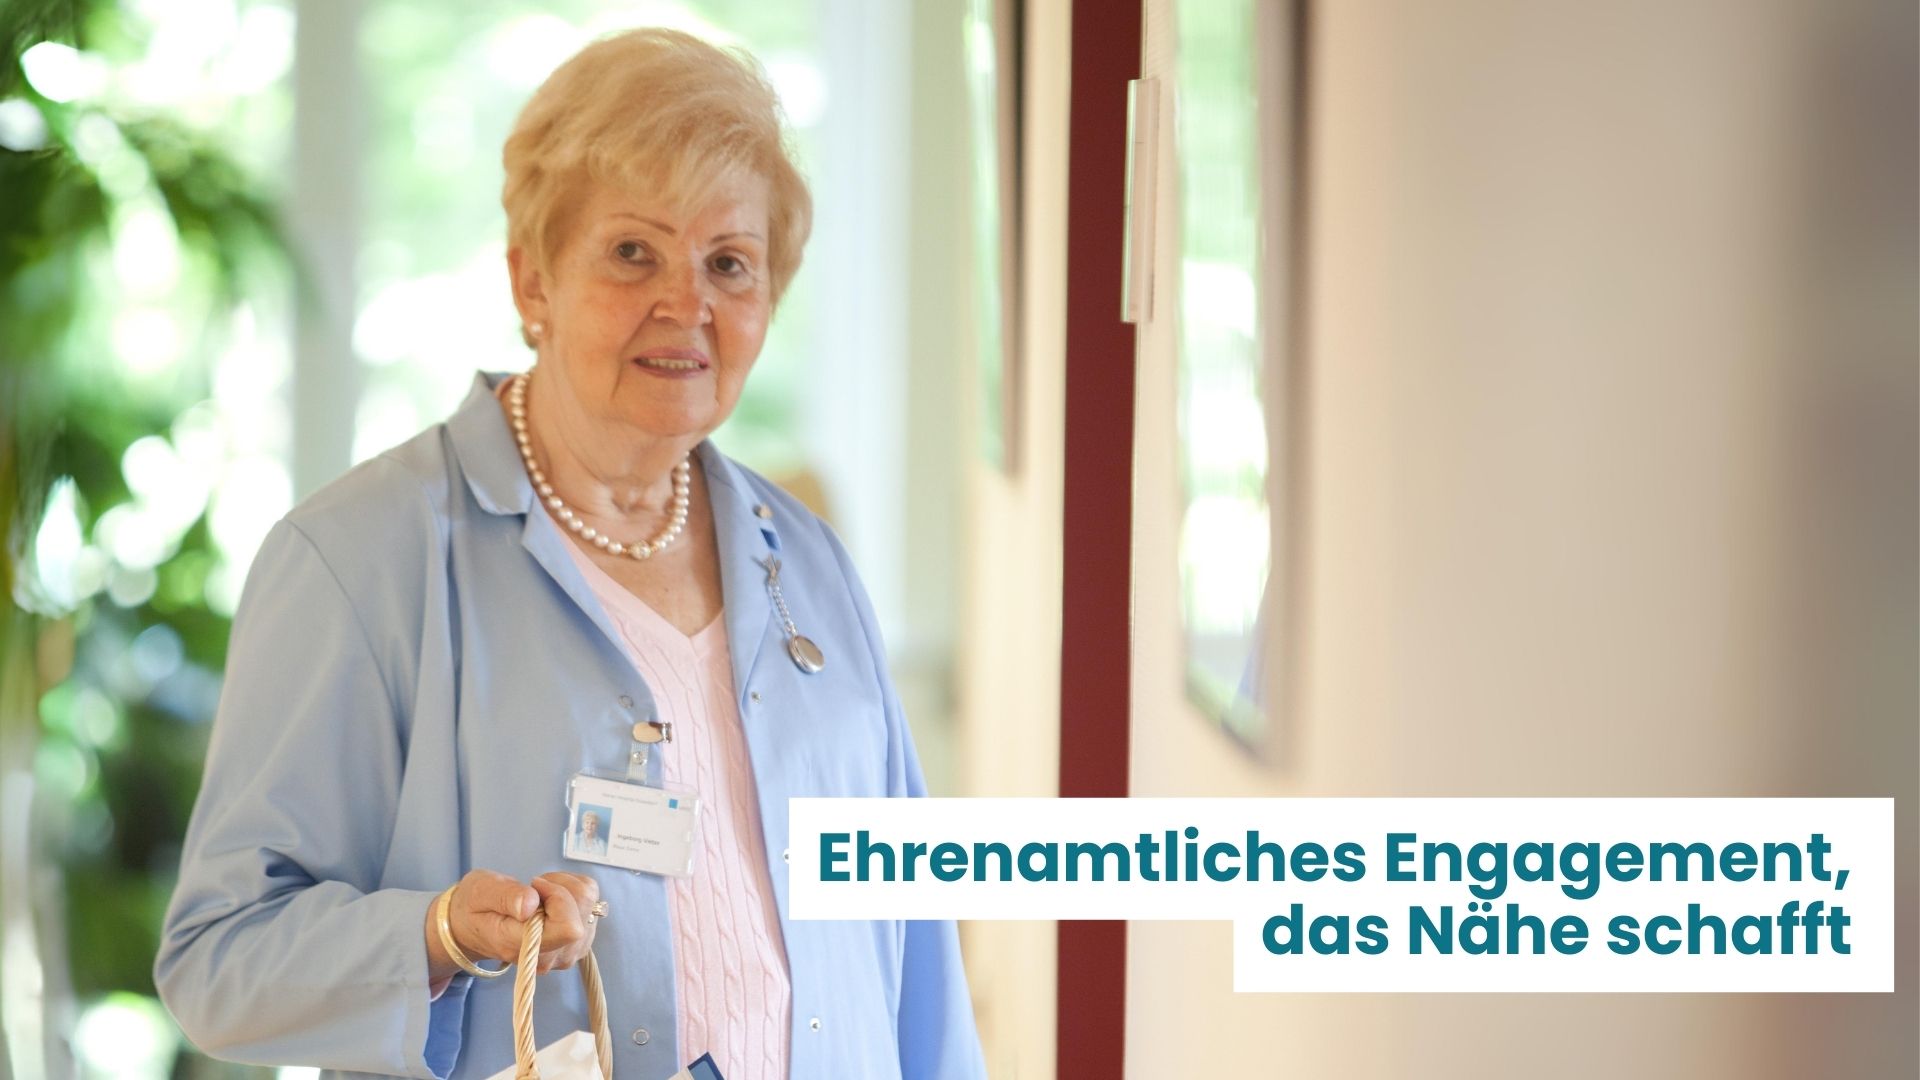 Eine ältere Dame, die sich ehrenamtlich im Krankenhaus engagiert mit dem Textzusatz "Ehrenamtliches Engagement, das Nähe schafft".